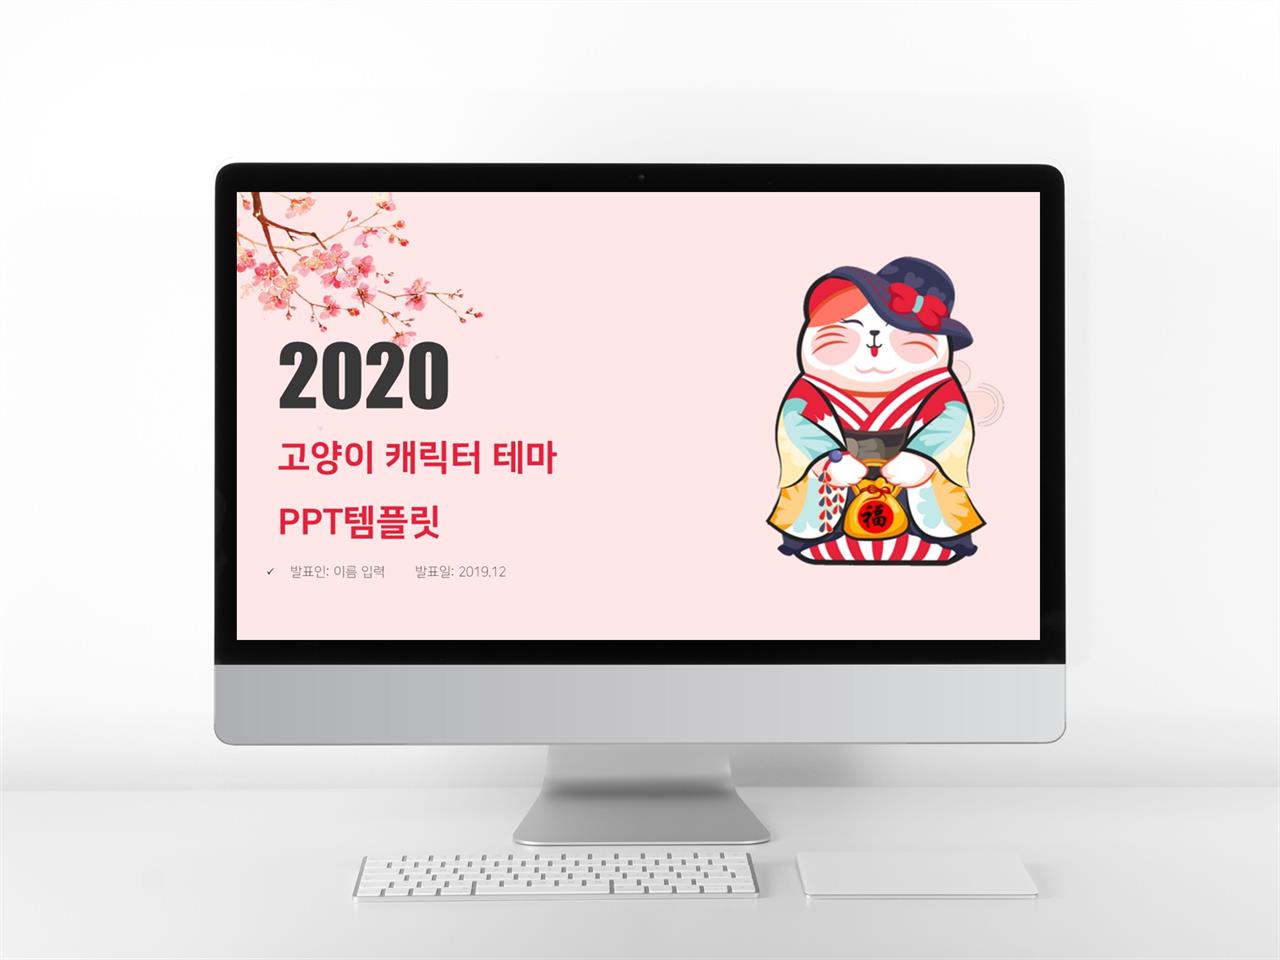 유치원 핑크색 캐릭터 프레젠테이션 파워포인트탬플릿 만들기 미리보기